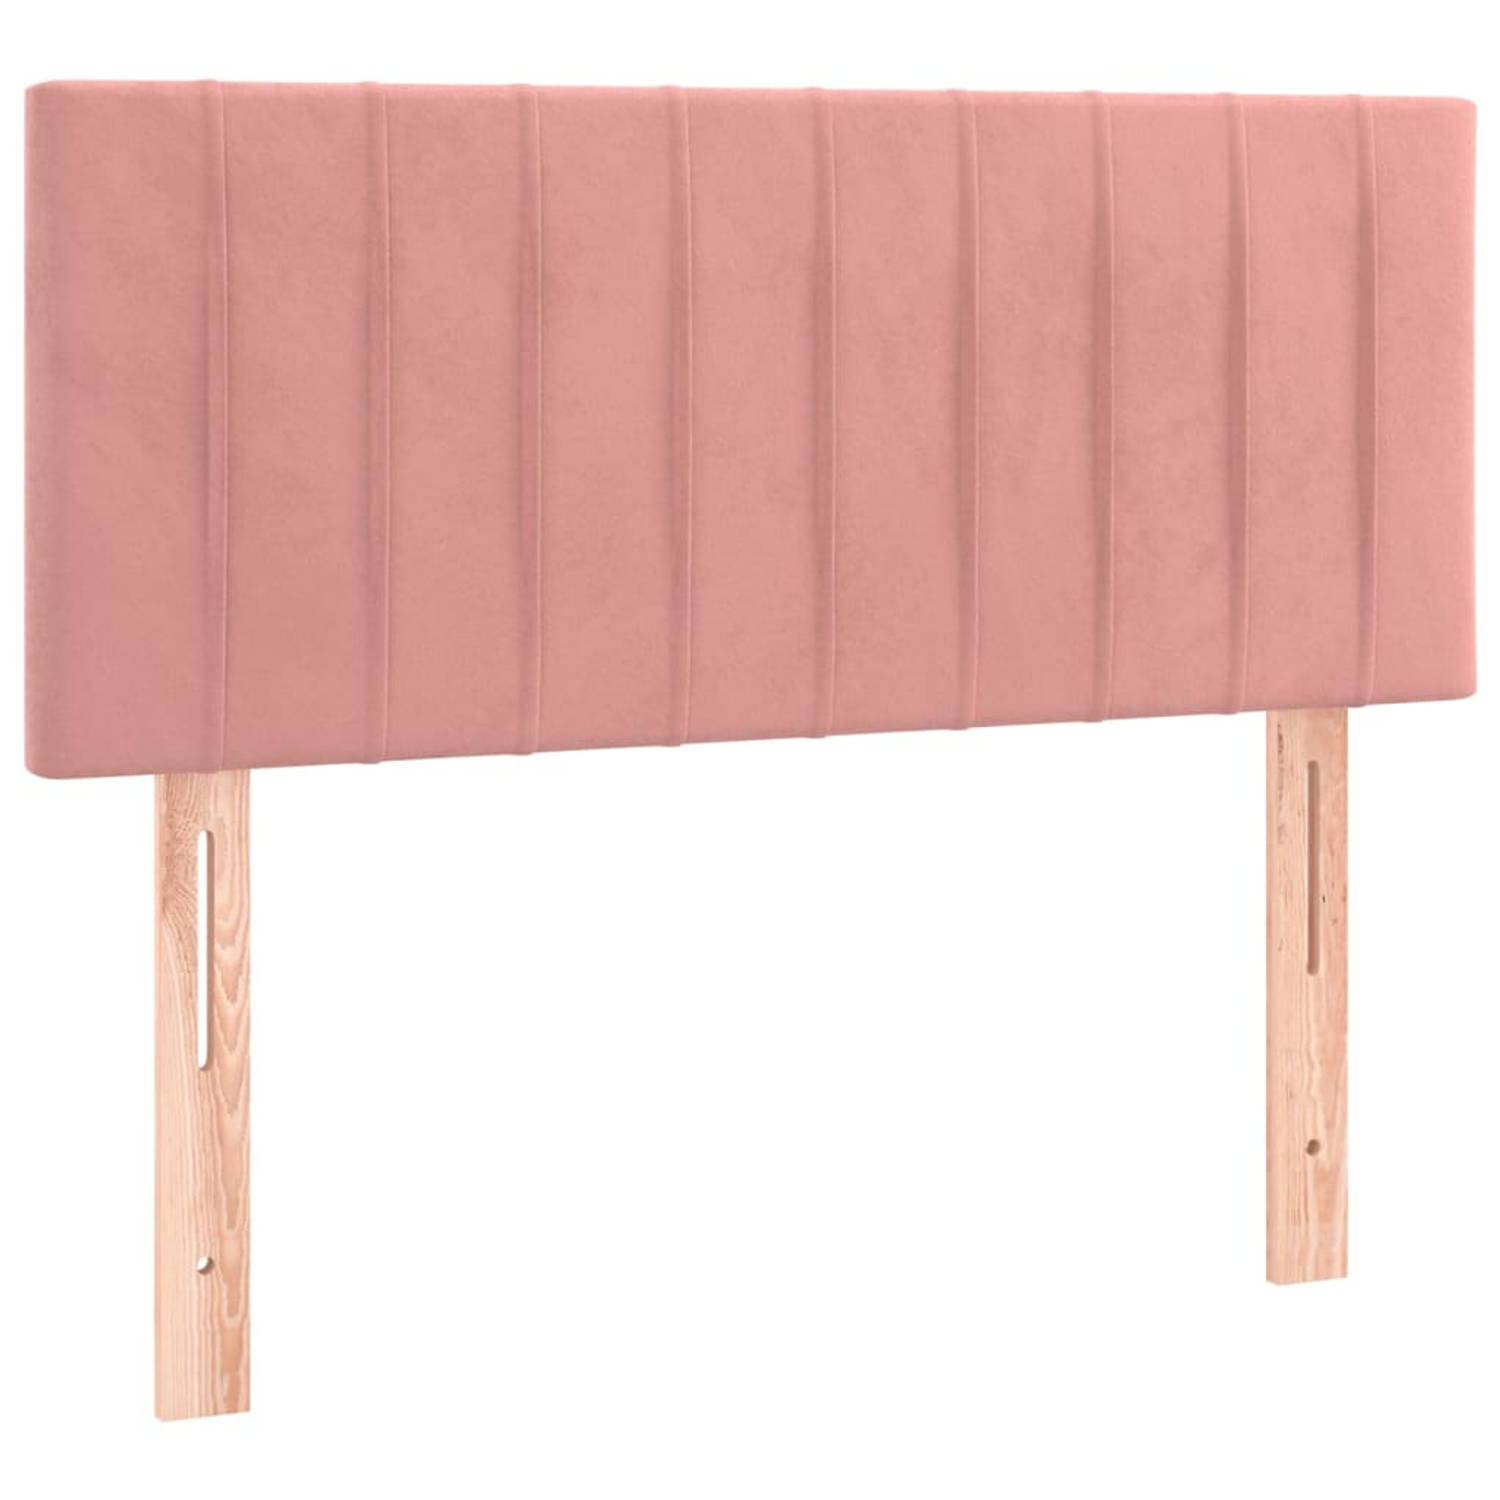 The Living Store Hoofdbord - Klassiek - Bedaccessoires - 80 x 33.5 x 78 cm - Zacht fluweel roze